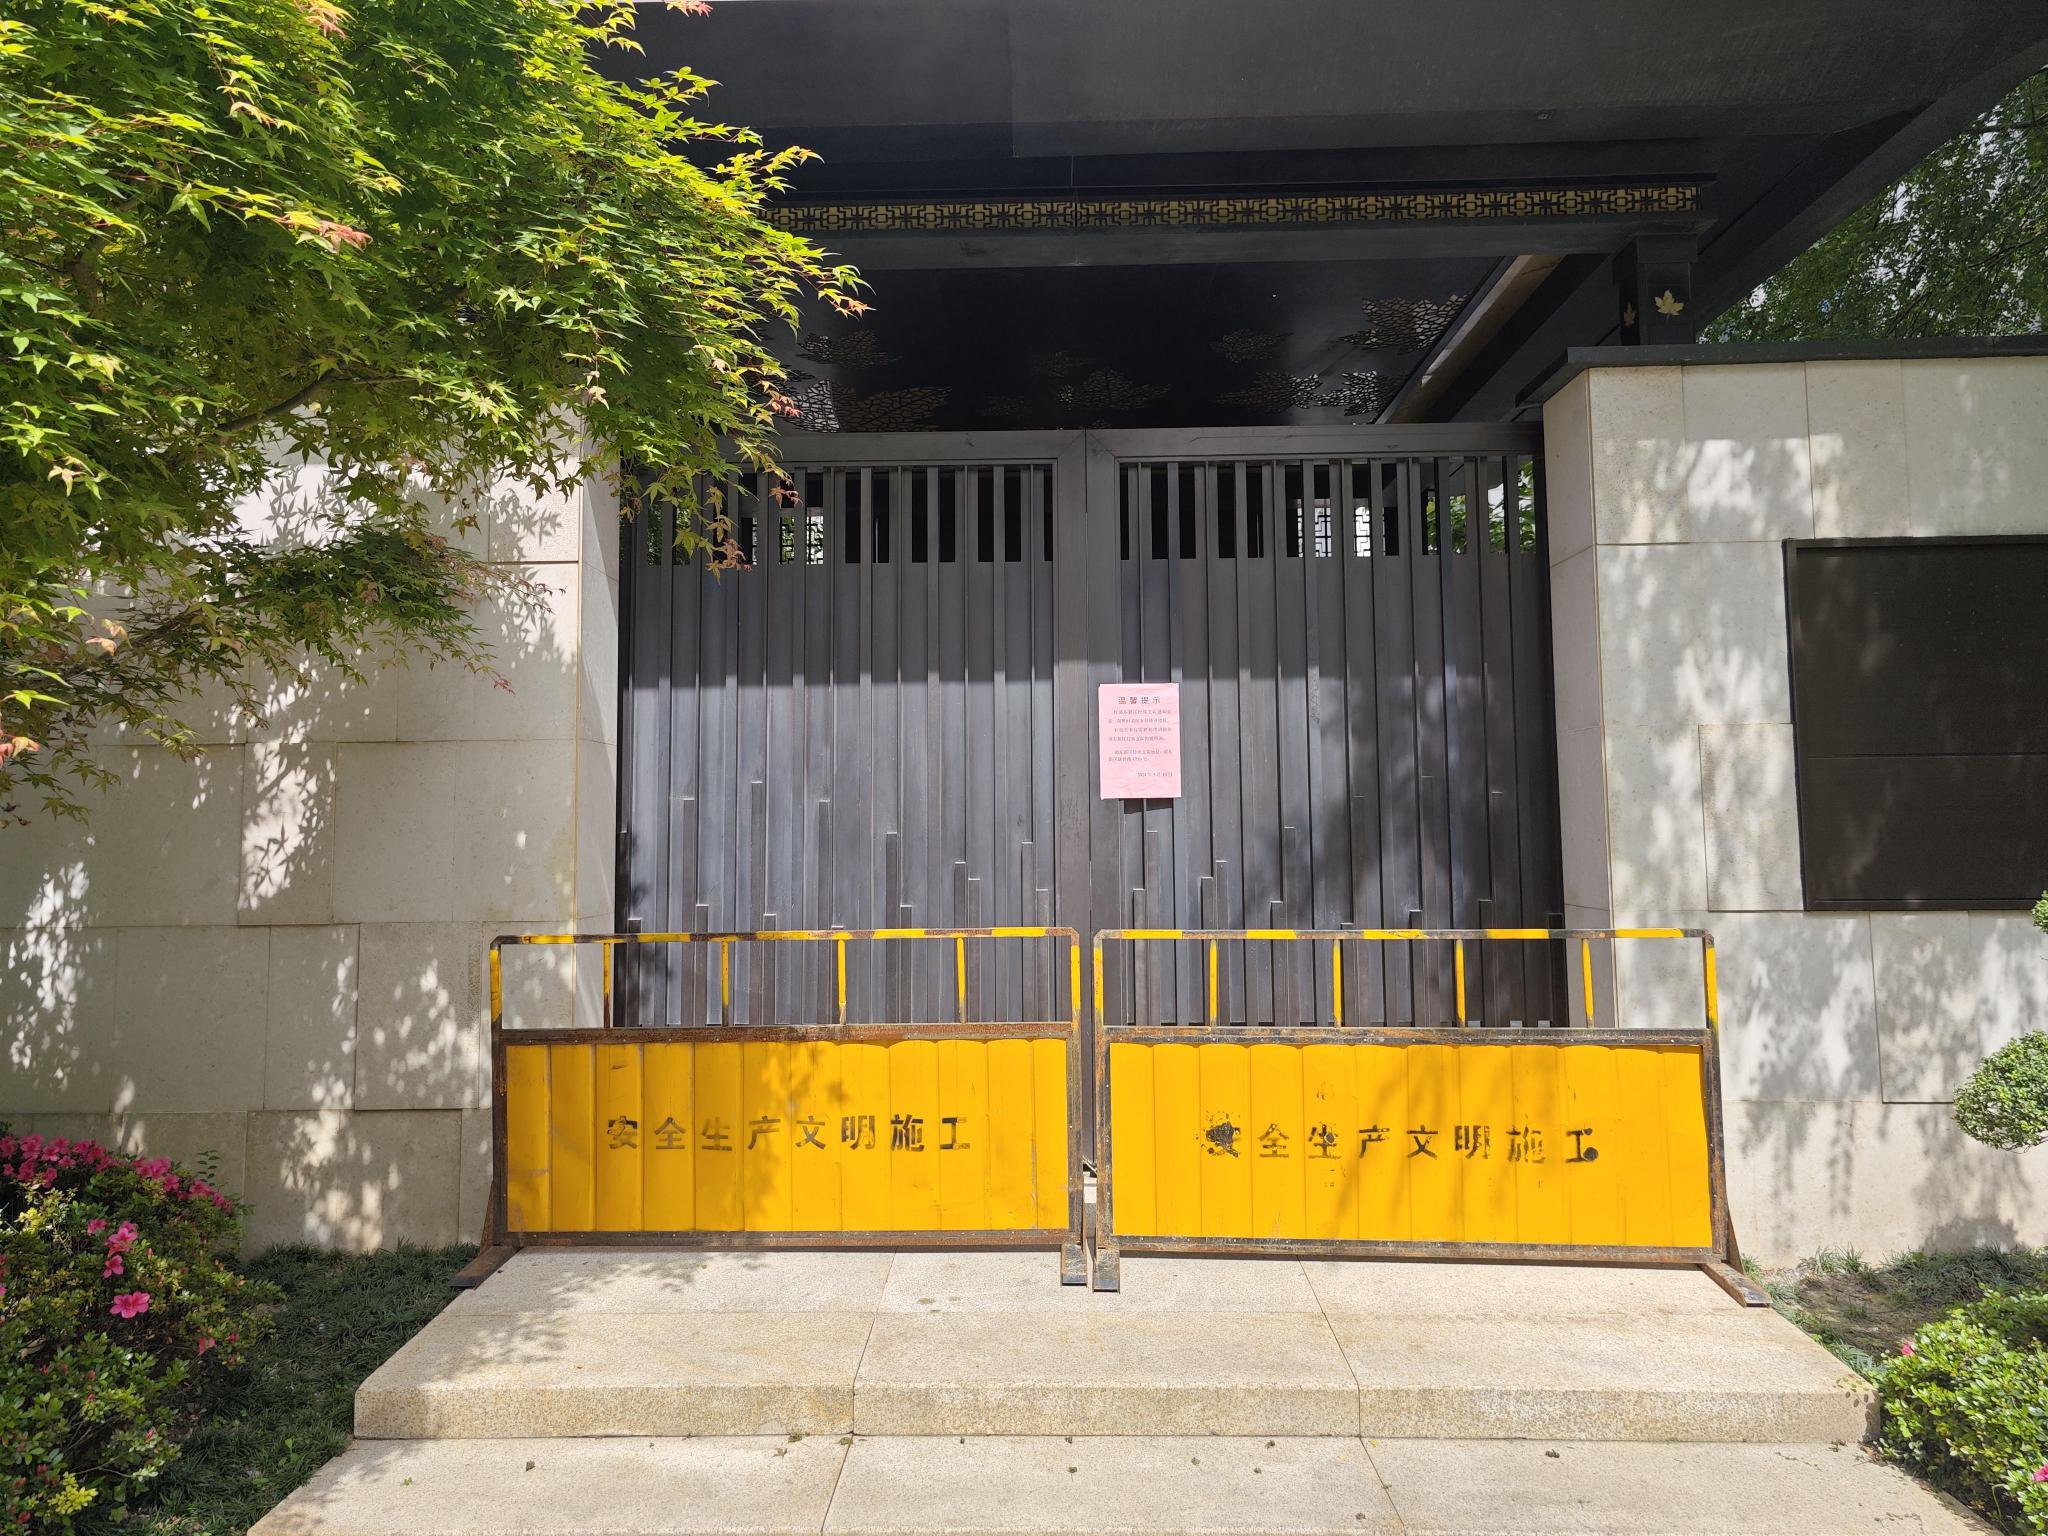 瑞丰达上海市浦东办公场所主大门封闭，门上贴有告示指引投资者咨询警方。 新京报记者俞金旻 摄